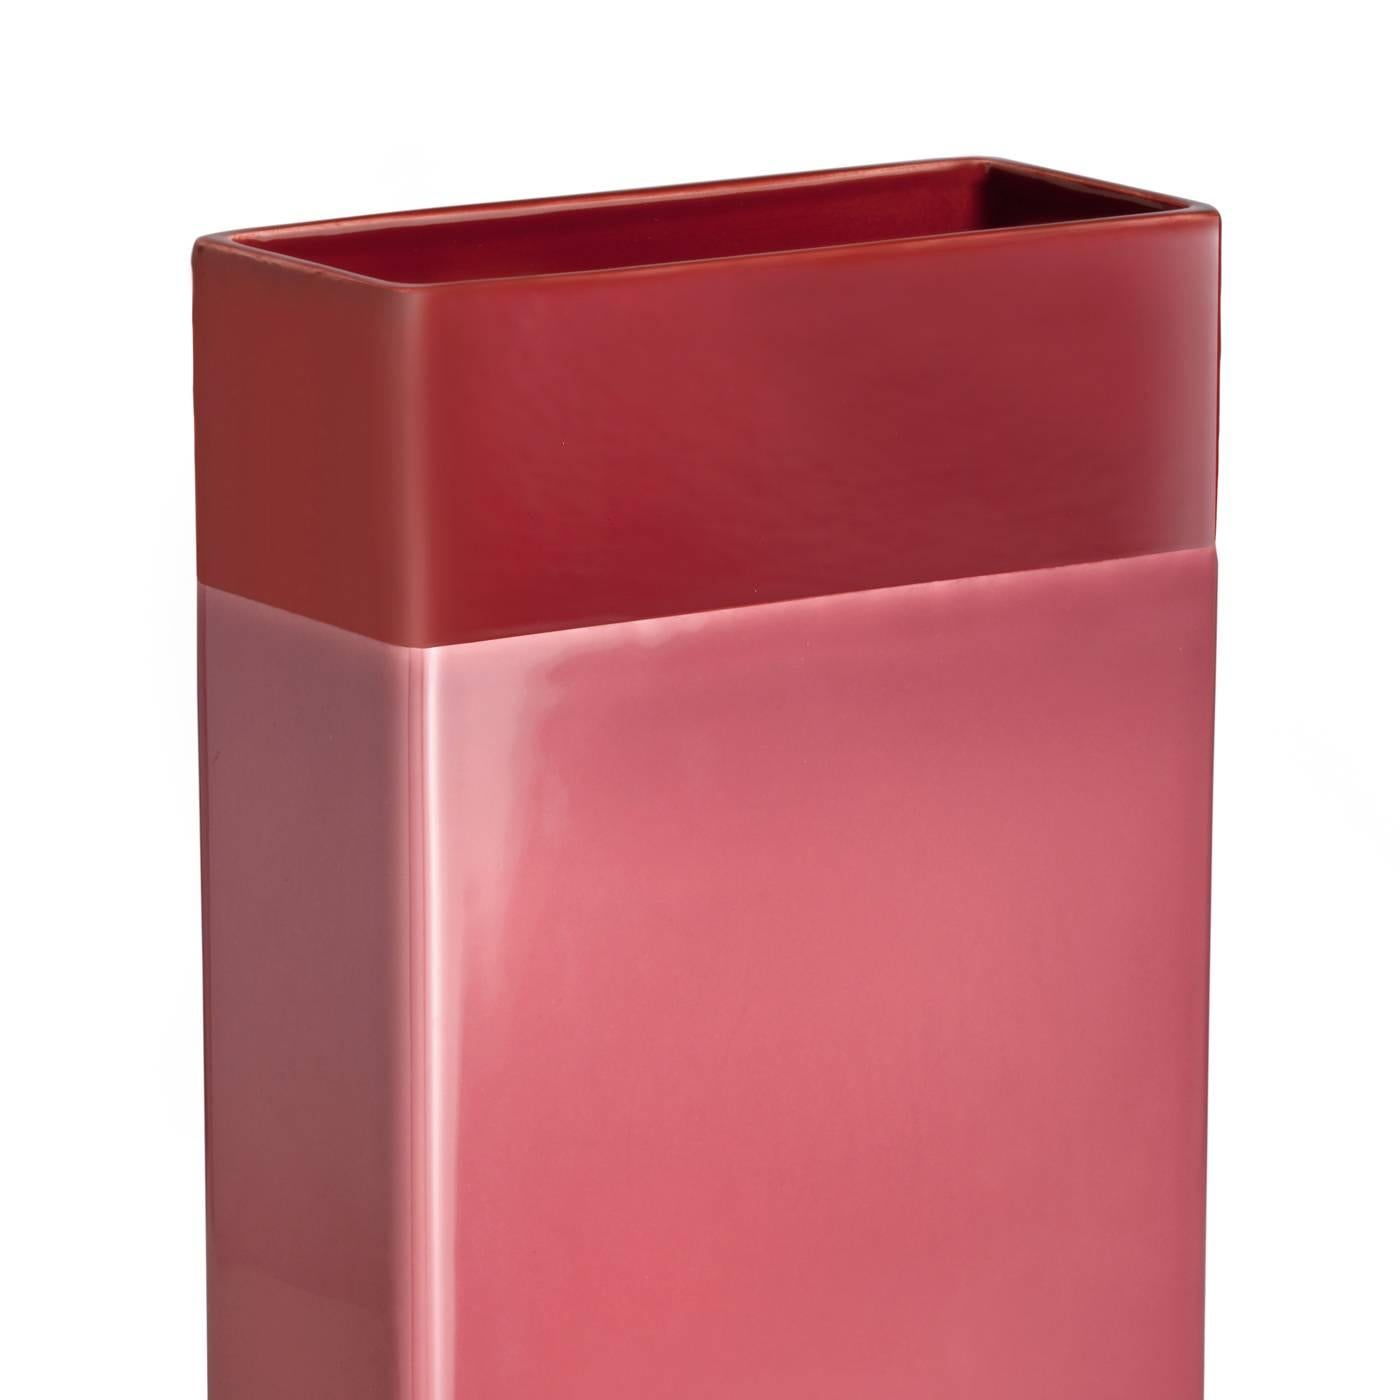 Ce vase saisissant a une forme simple et rectangulaire, soulignée par une bande de laiton dans le bas et deux finitions solides différentes, une grande bande en rose et un haut rouge vif. La pièce en argile blanche a été conçue en 2016 par Dimore